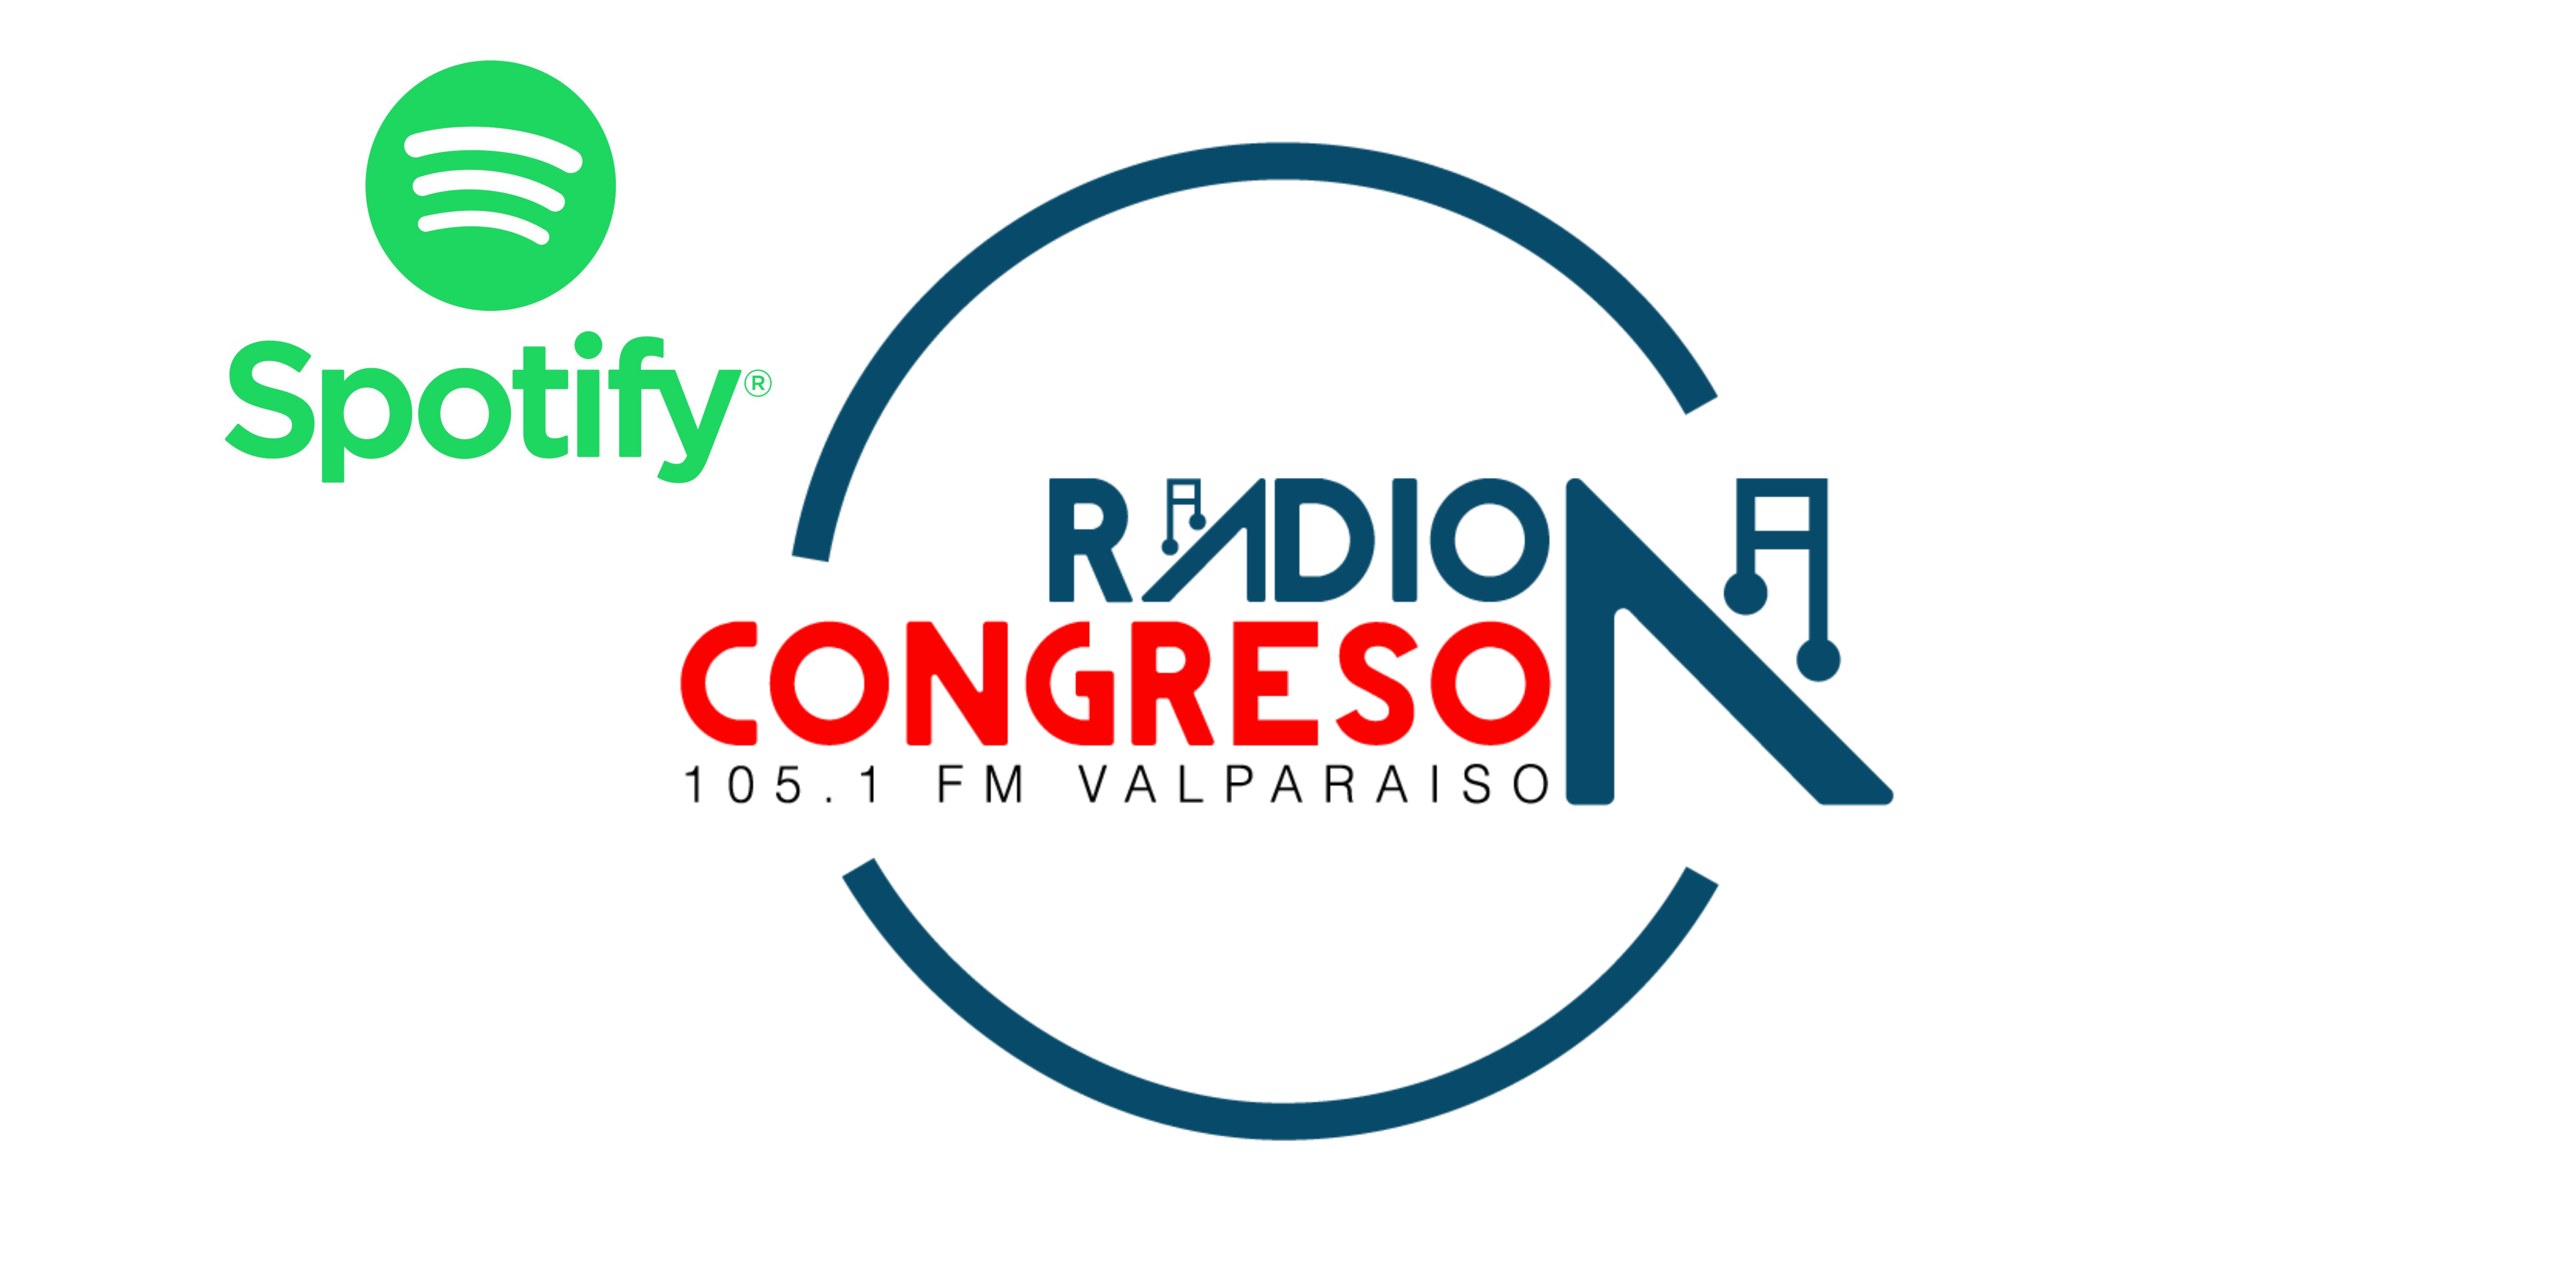 Radio Congreso en Spotify